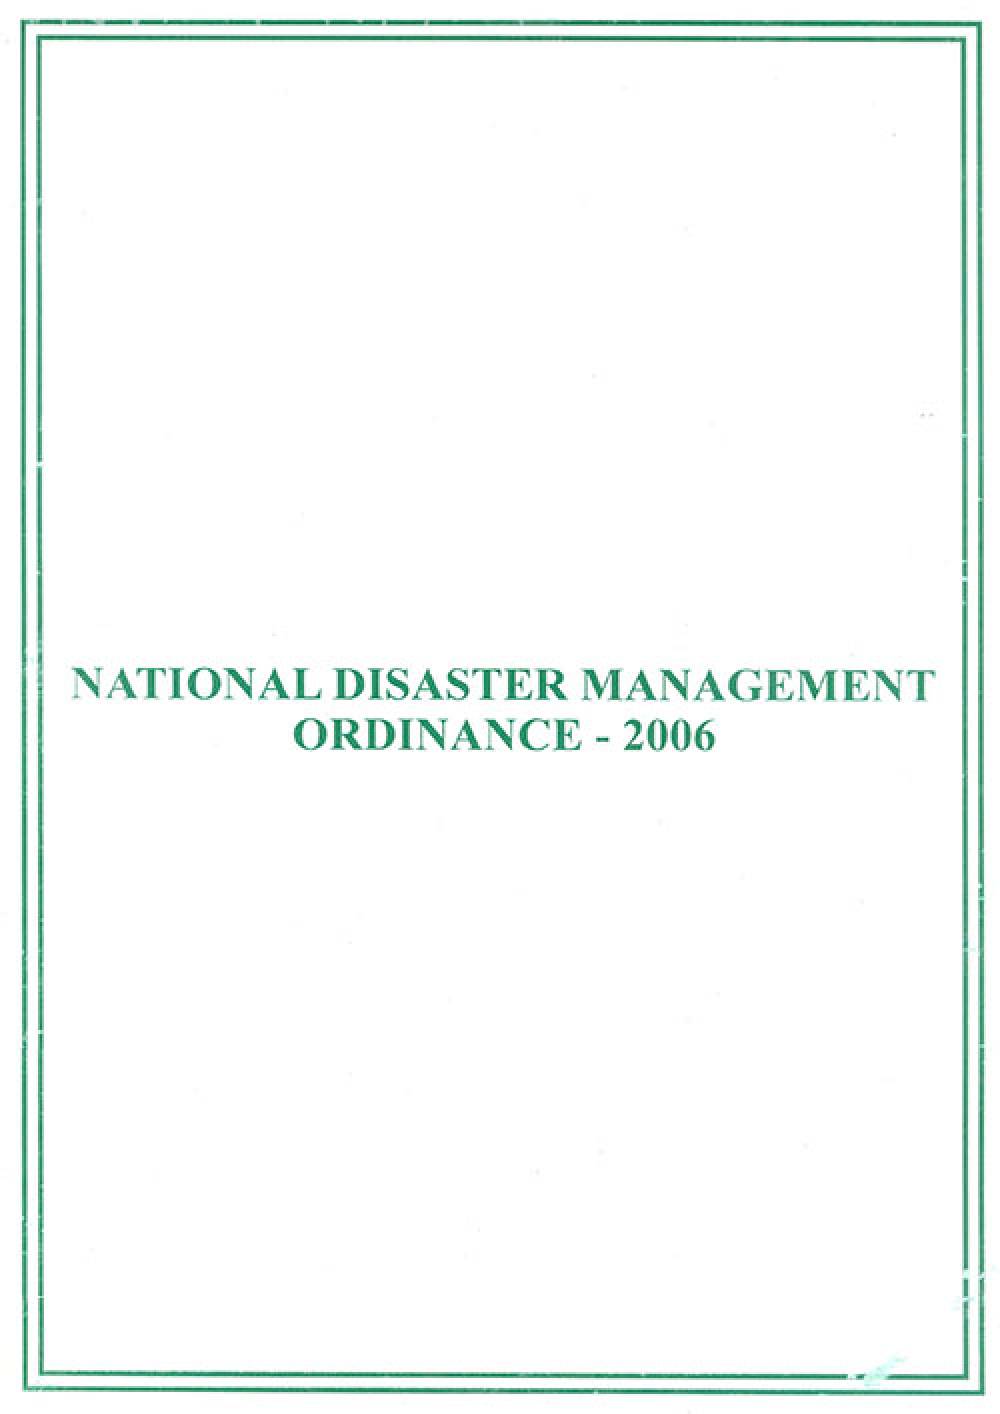 National Disaster Management Ordinance 2006